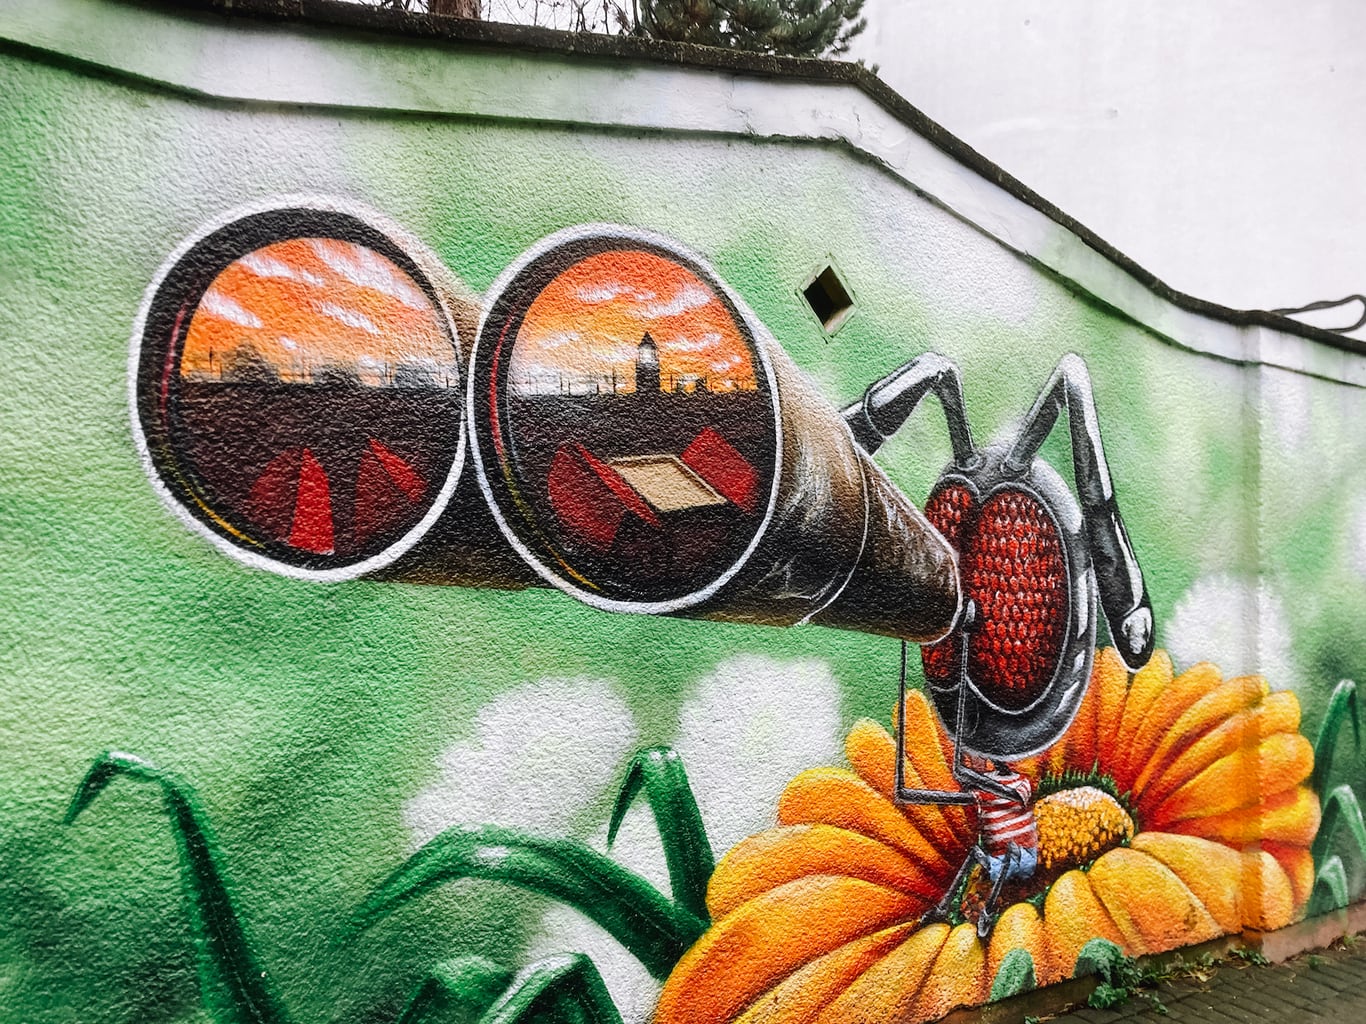 Insect met verrekijker street art in Ehrenfeld